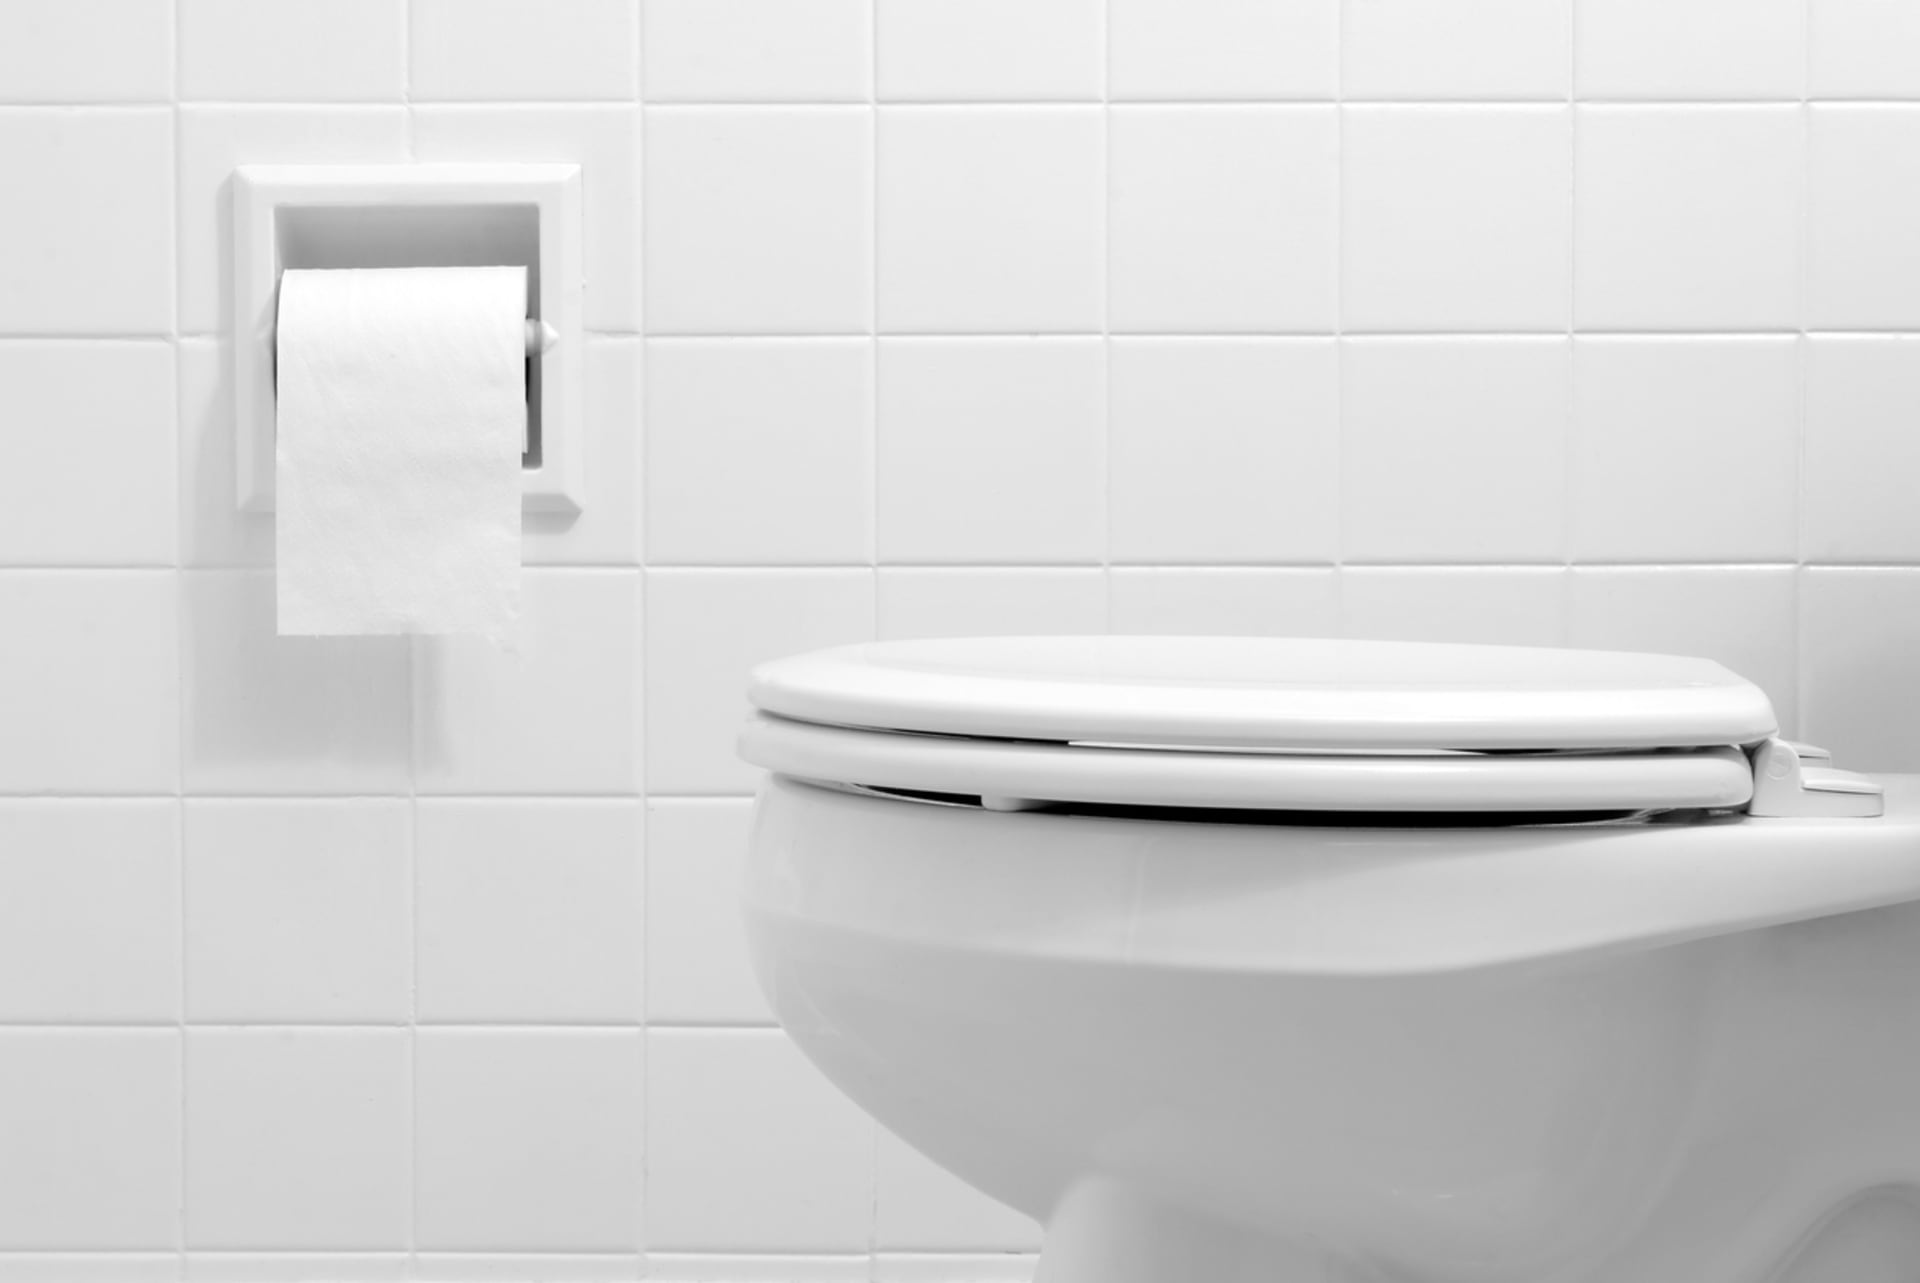 Záchodová klika je z pohledu infekcí nebezpečnější než samotné prkýnko.